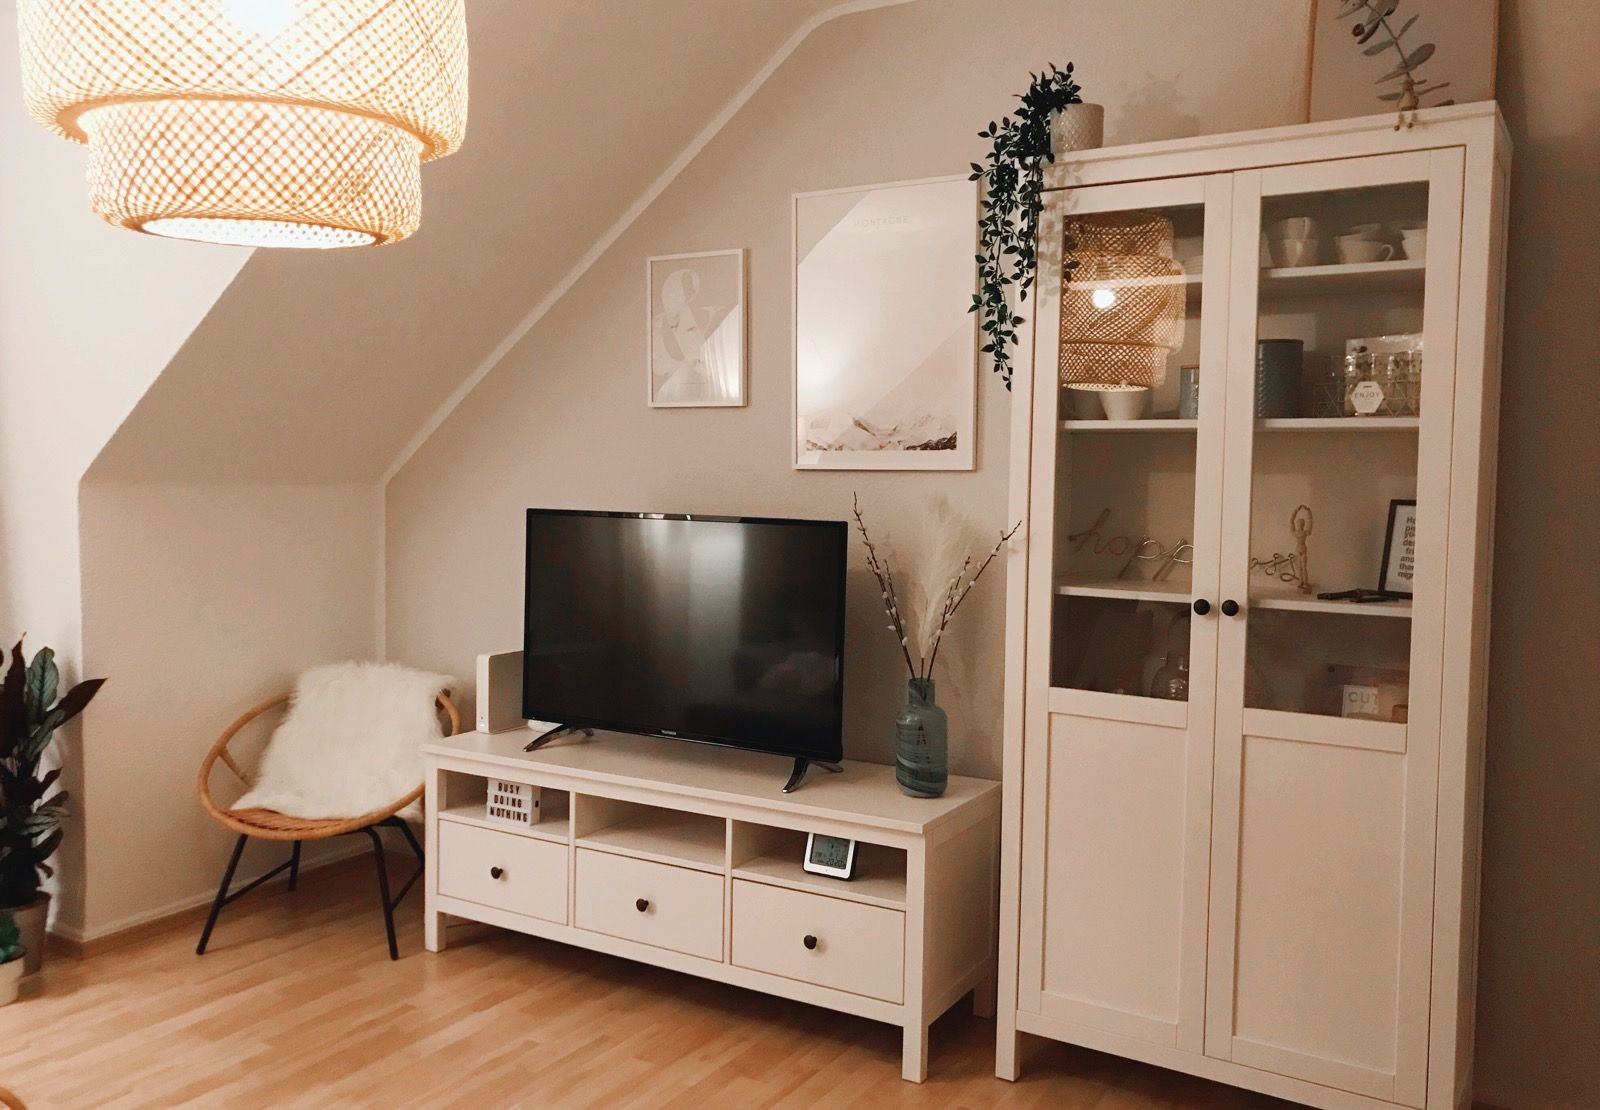 Ikea Hemnes Livingroom | Wohnung Wohnzimmer, Wohnungseinrichtung regarding Hemnes Wohnzimmer Ideen